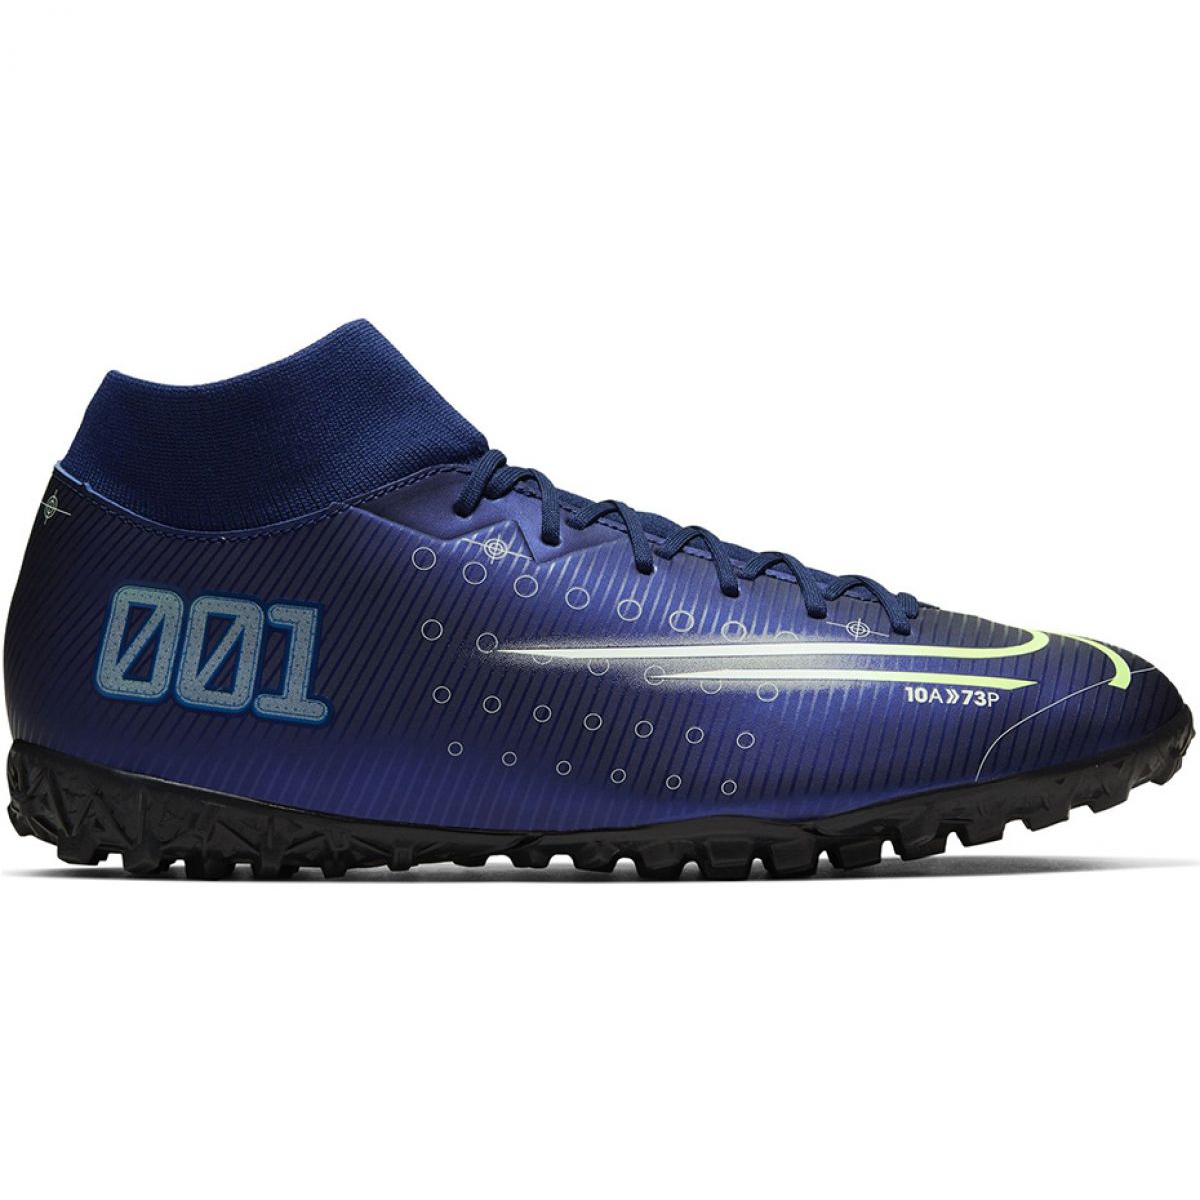 Buty piłkarskie Nike Mercurial Superfly 7 Academy Mds Tf M BQ5435 401 granatowe niebieskie